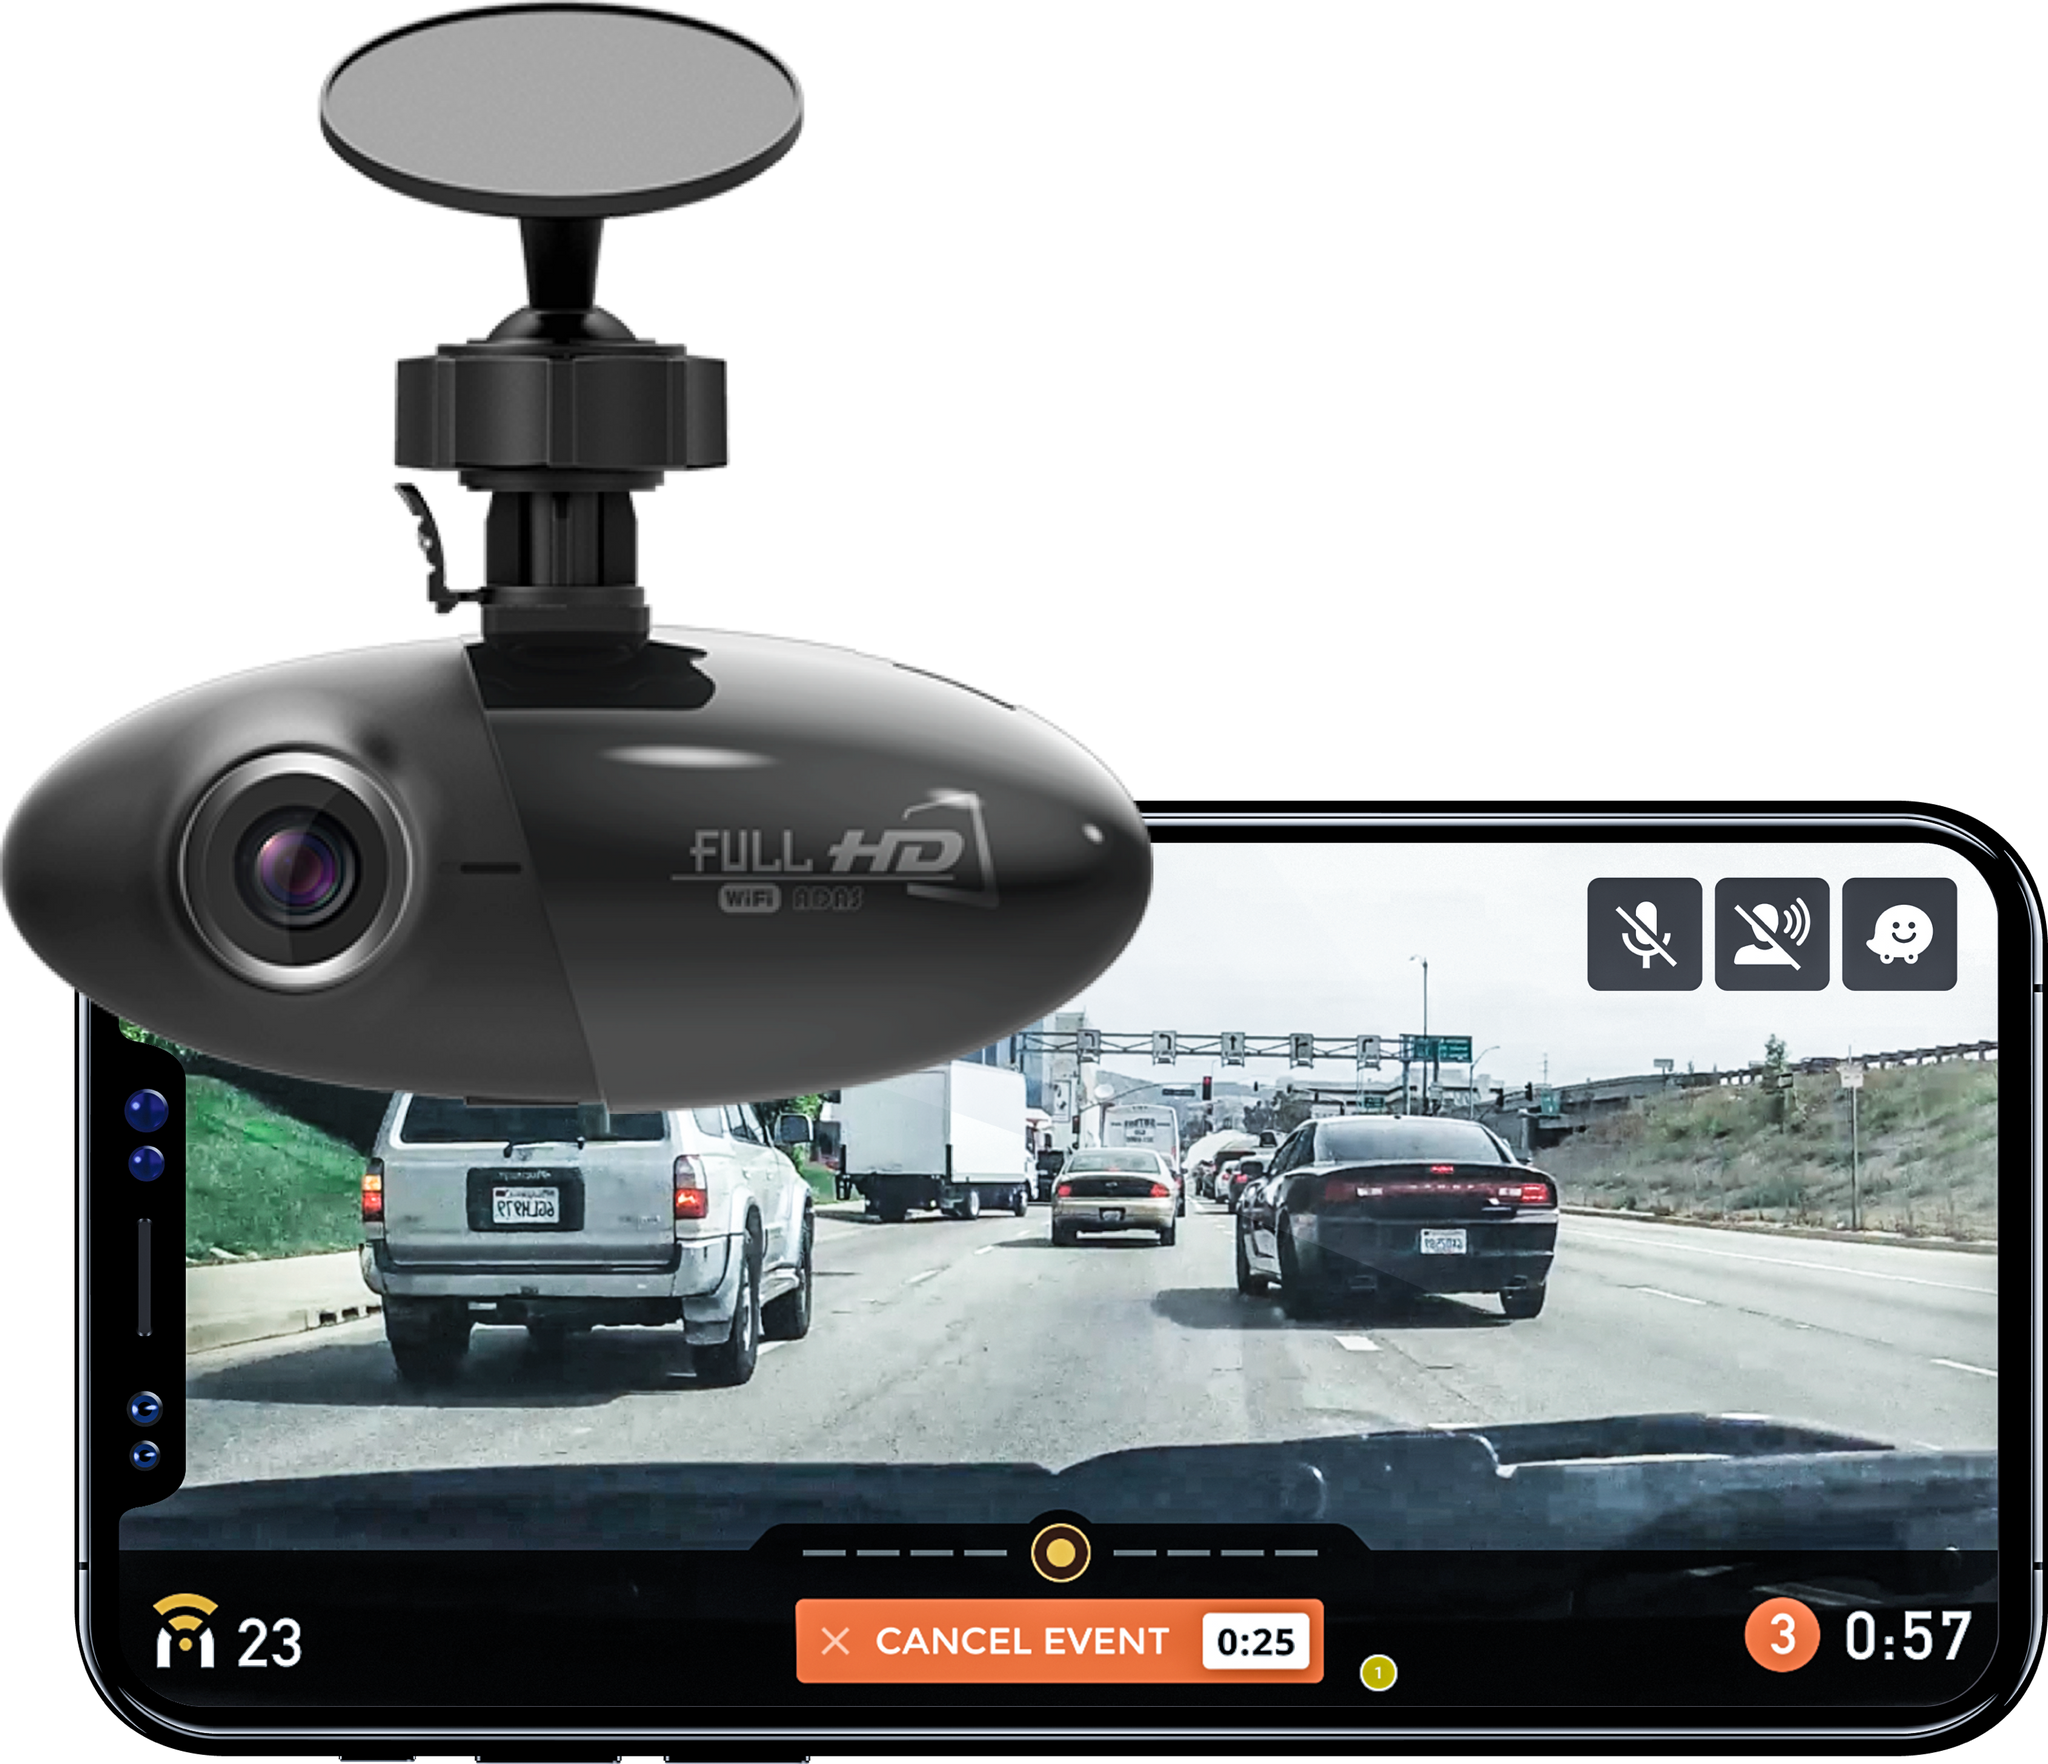 Nexar Pro Dash Cam - Best Truck Dash Cam